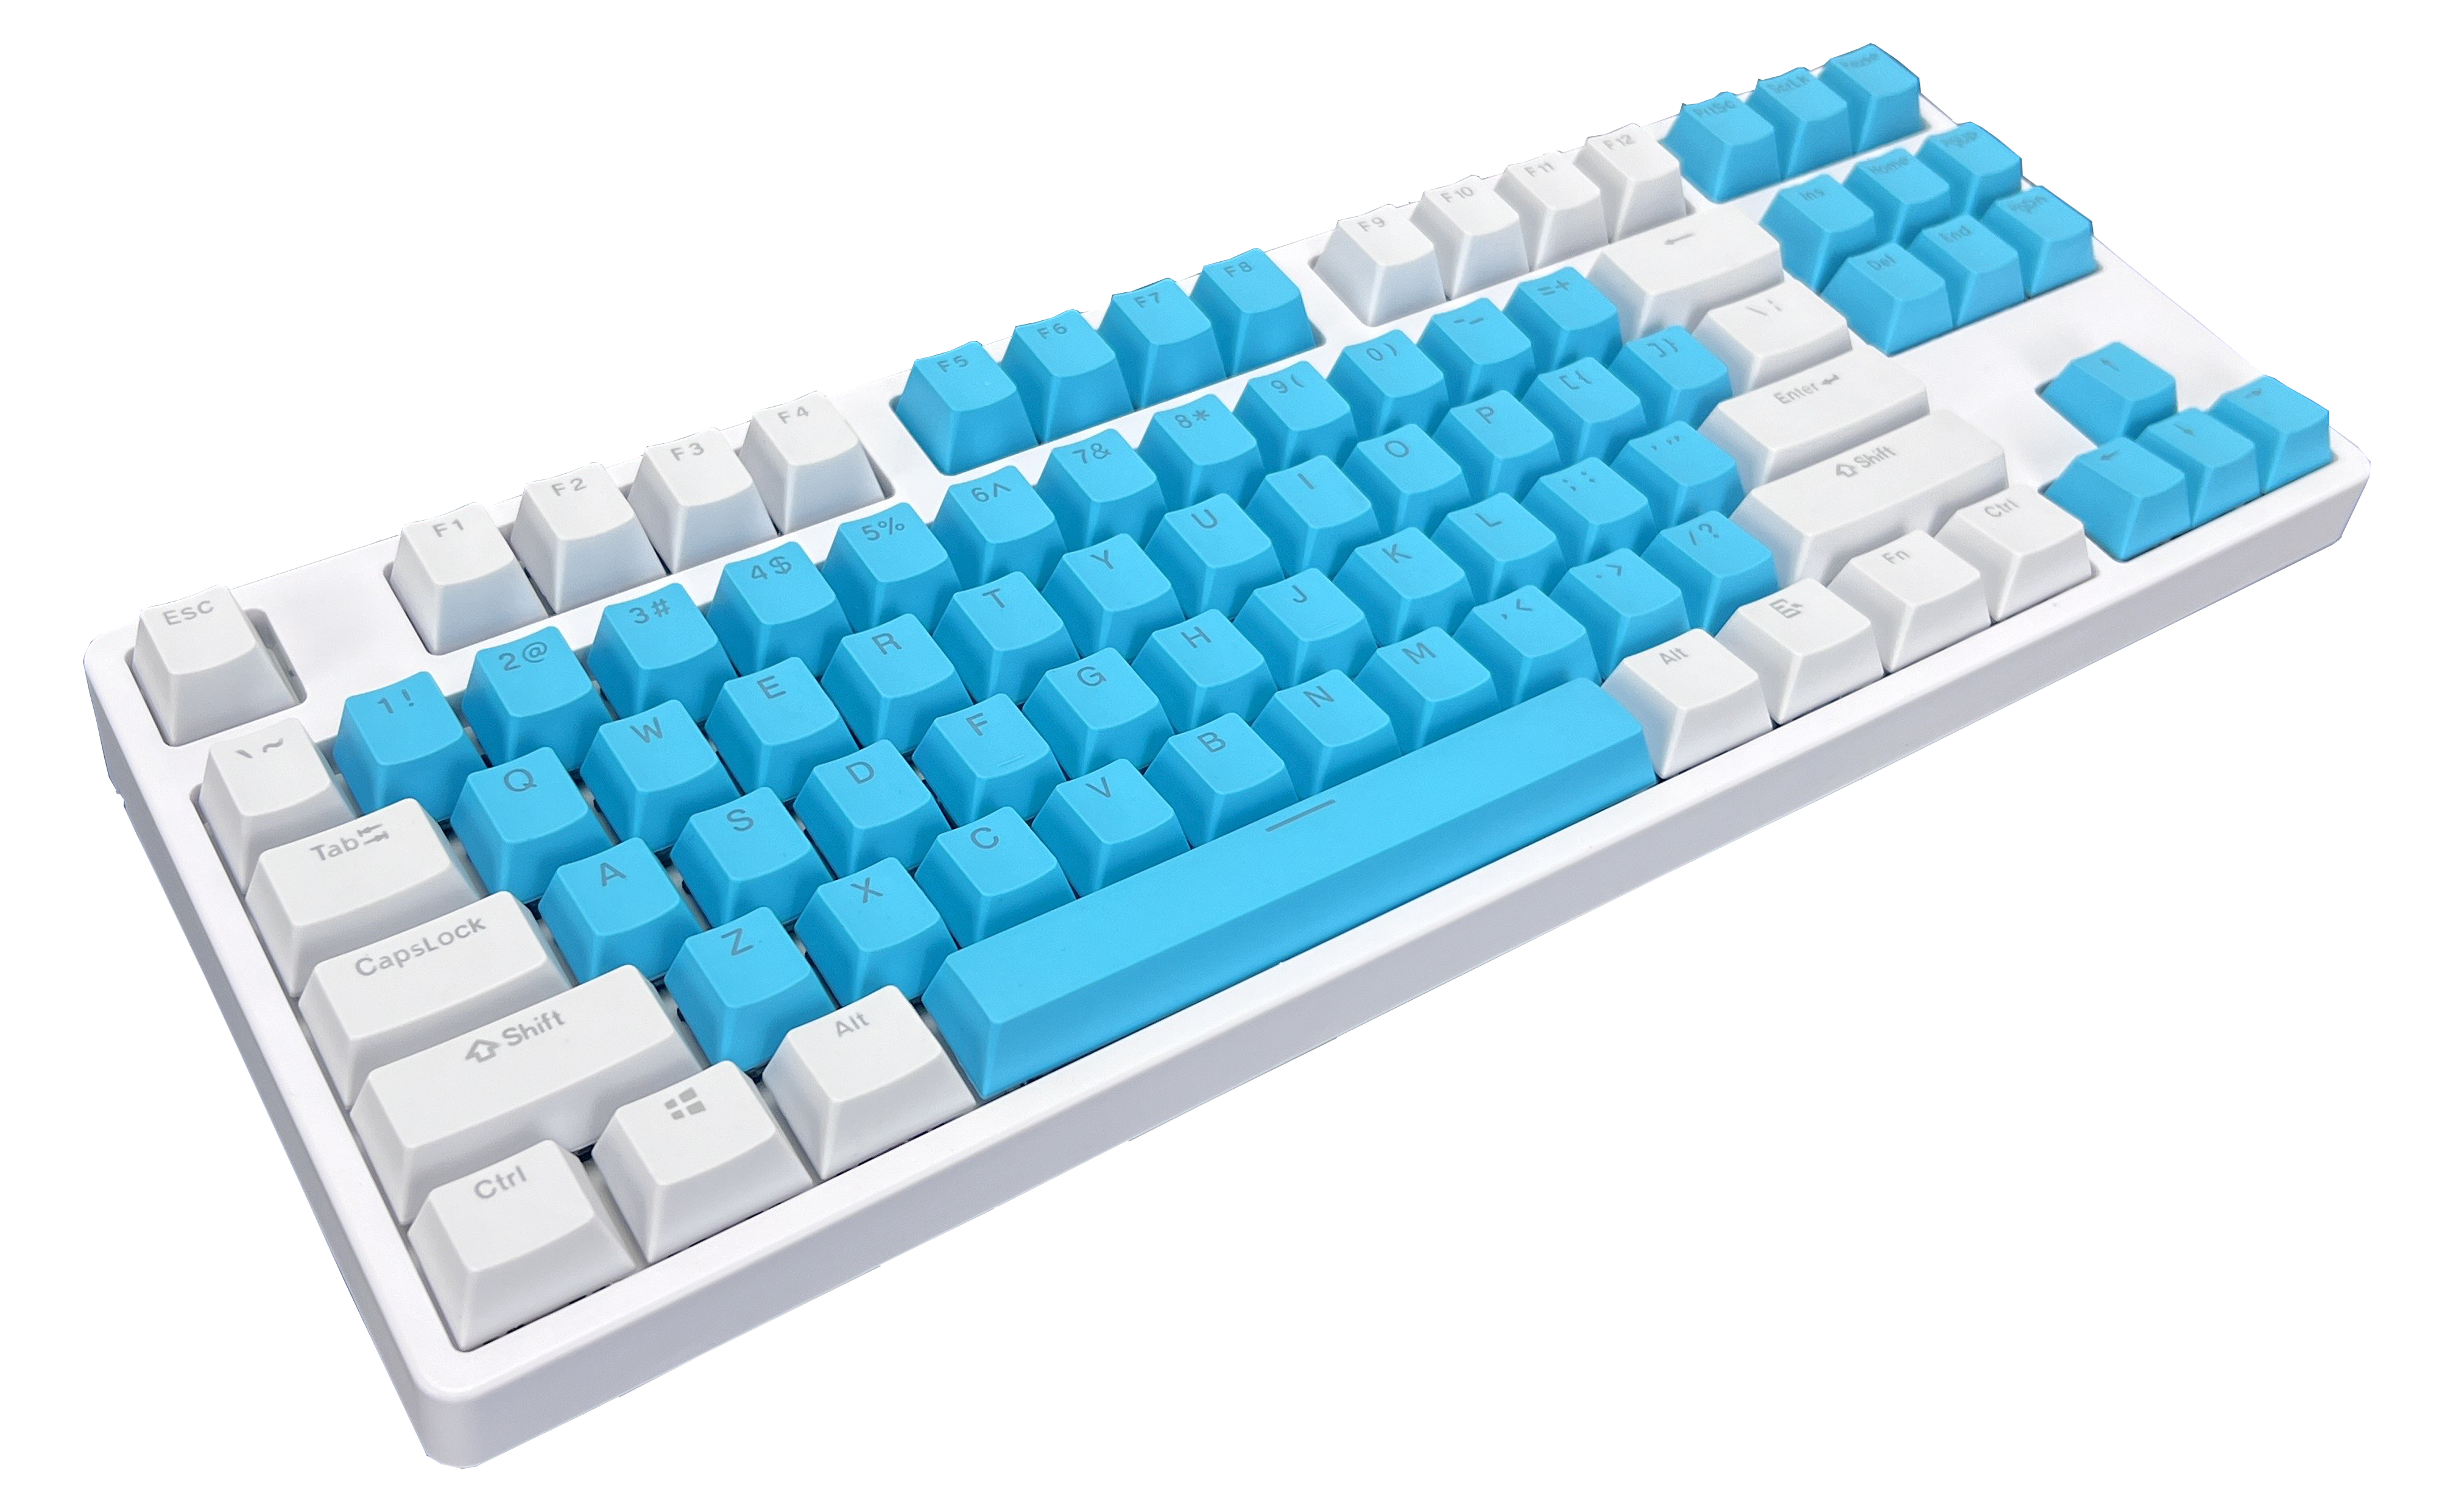 White and Cyan 87 keys Mechanical Keyboard- Tri Mode